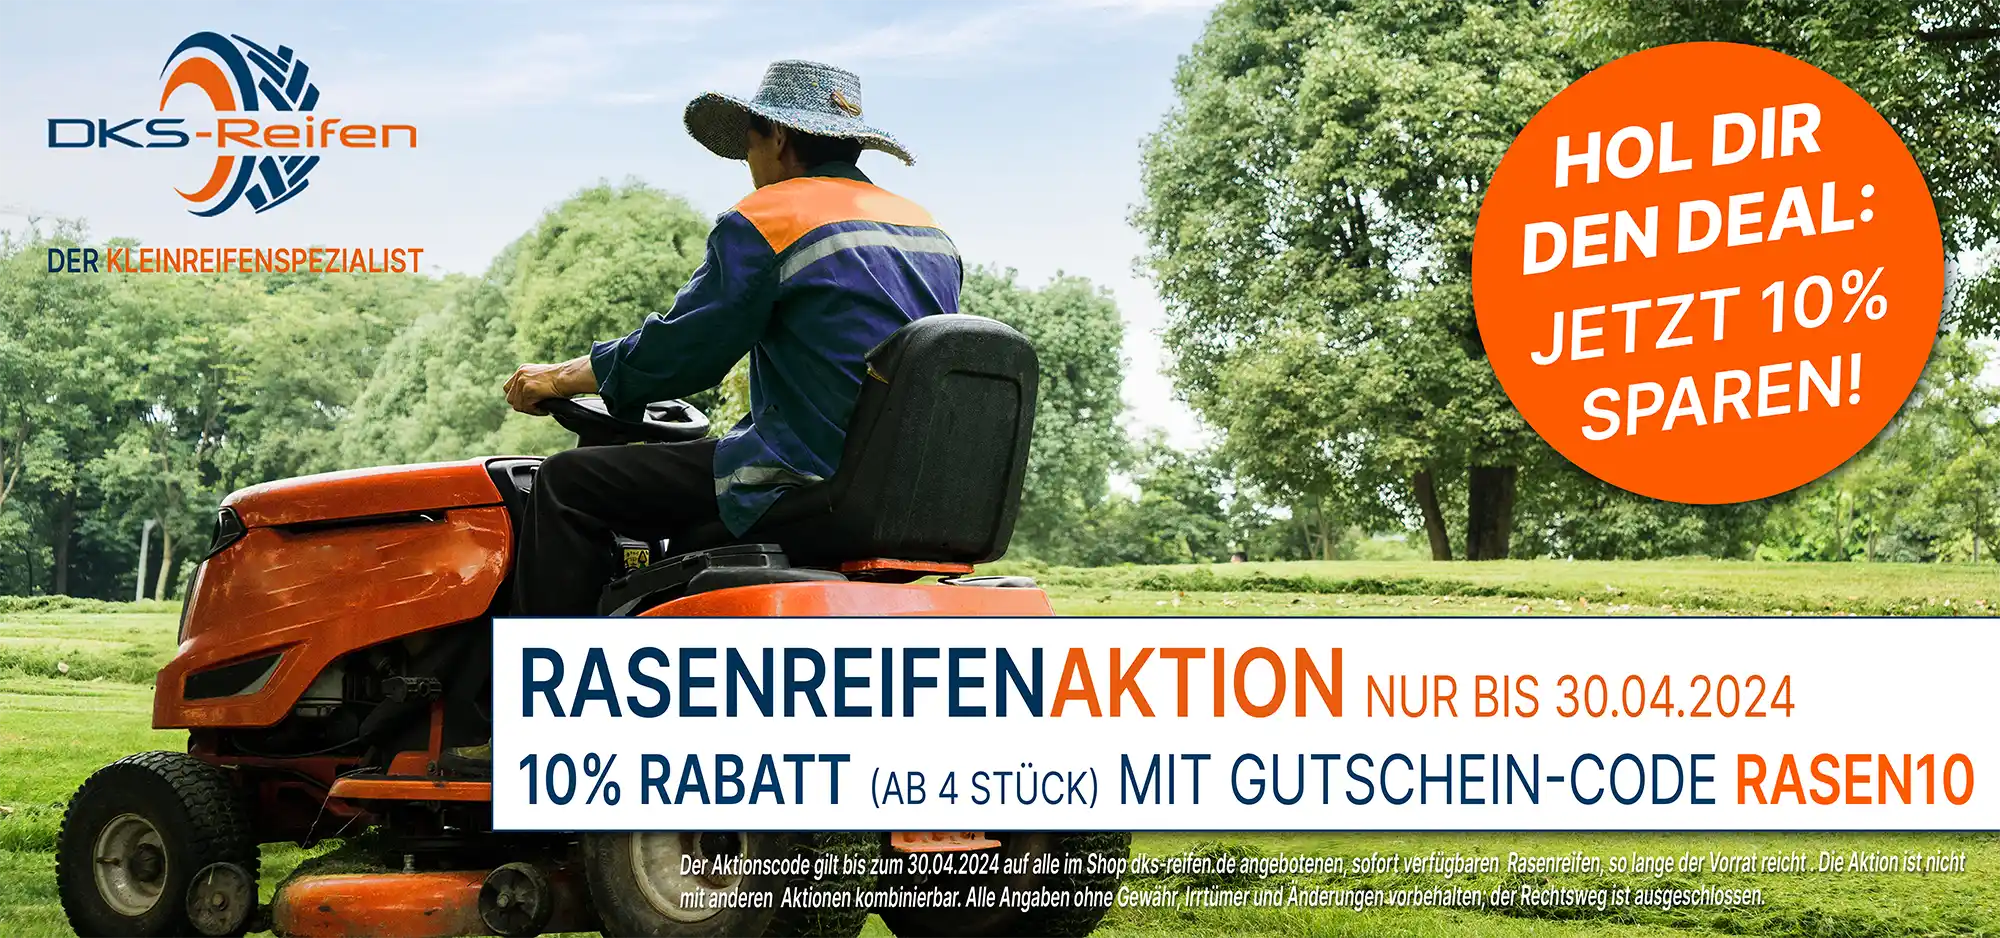 dks-reifen.de 10% Rabattaktion Rasenreifen bis 30.04.2024 ab 4 Stück